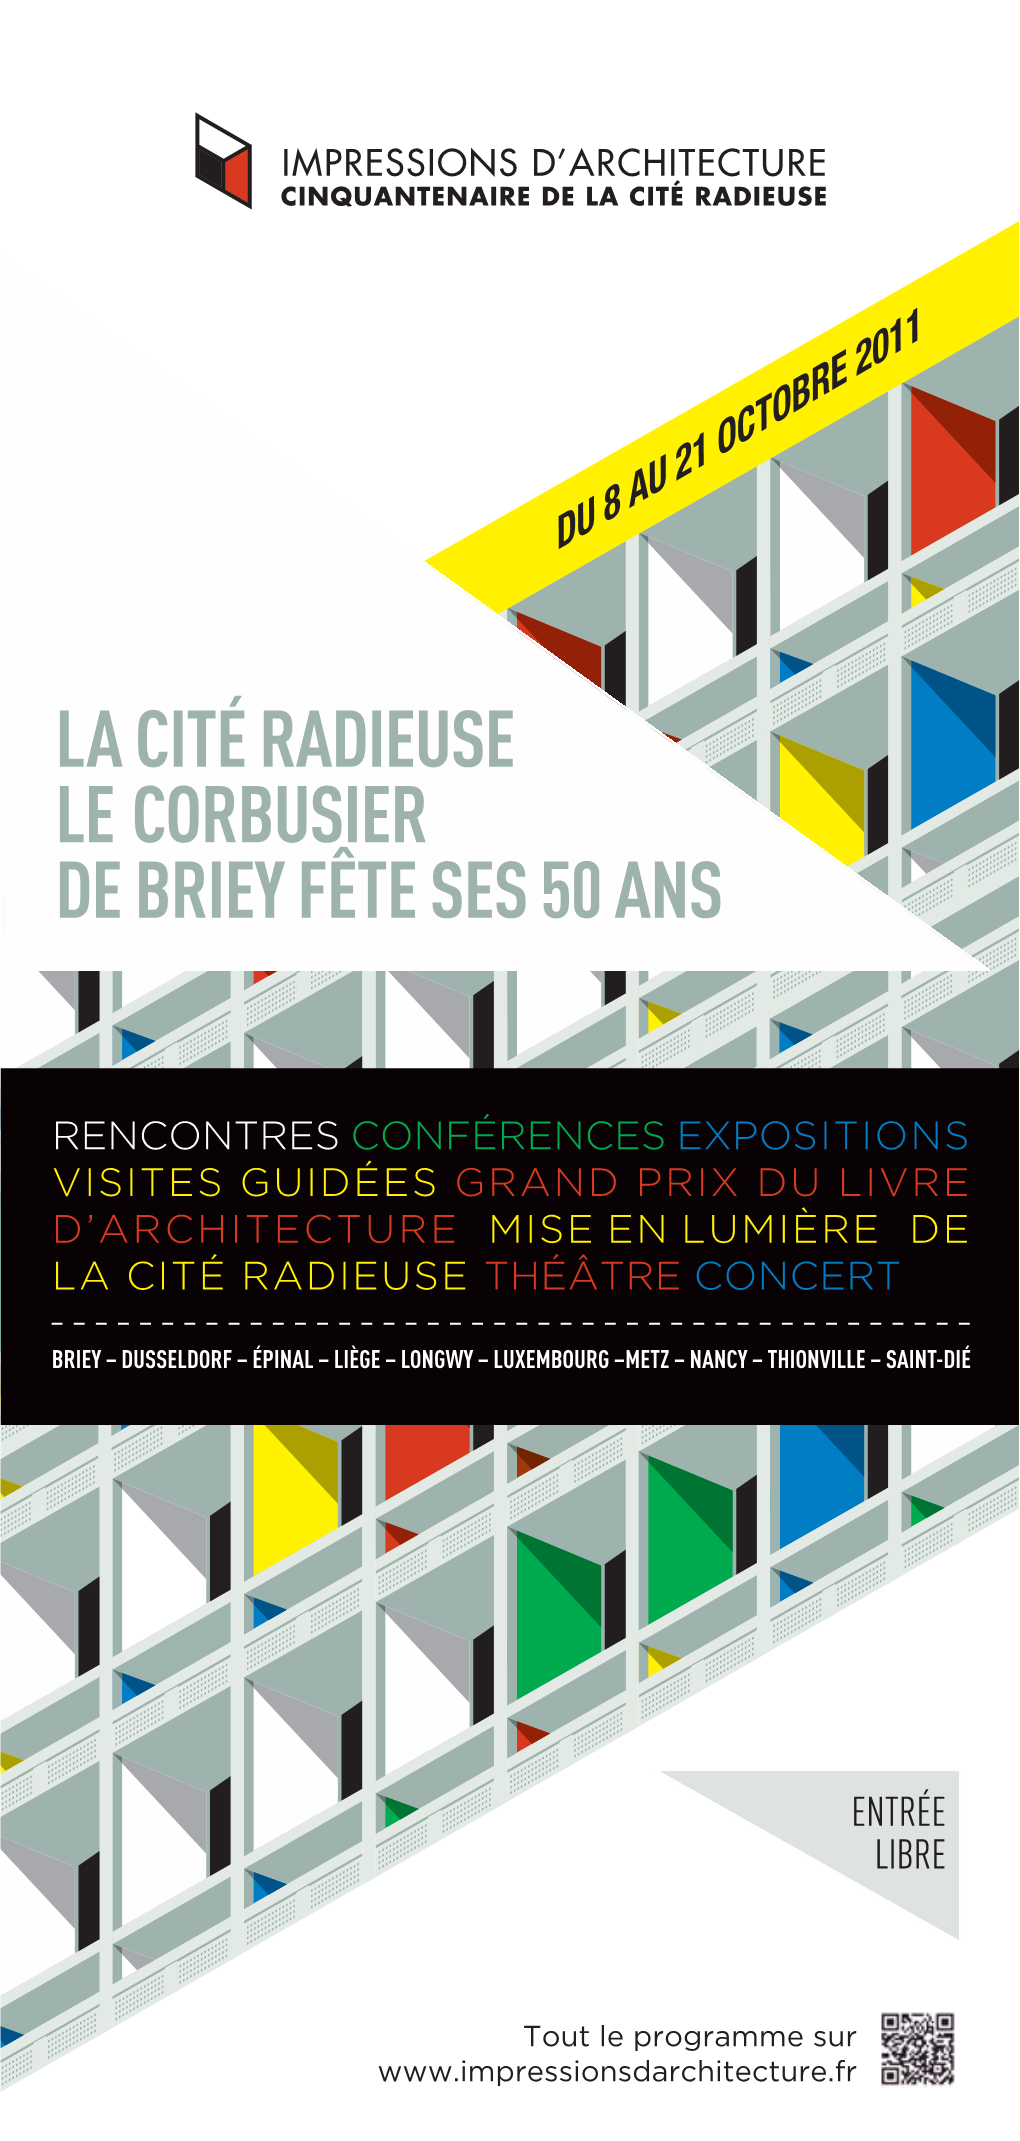 La Cité Radieuse Le Corbusier De Briey Fête Ses 50 Ans